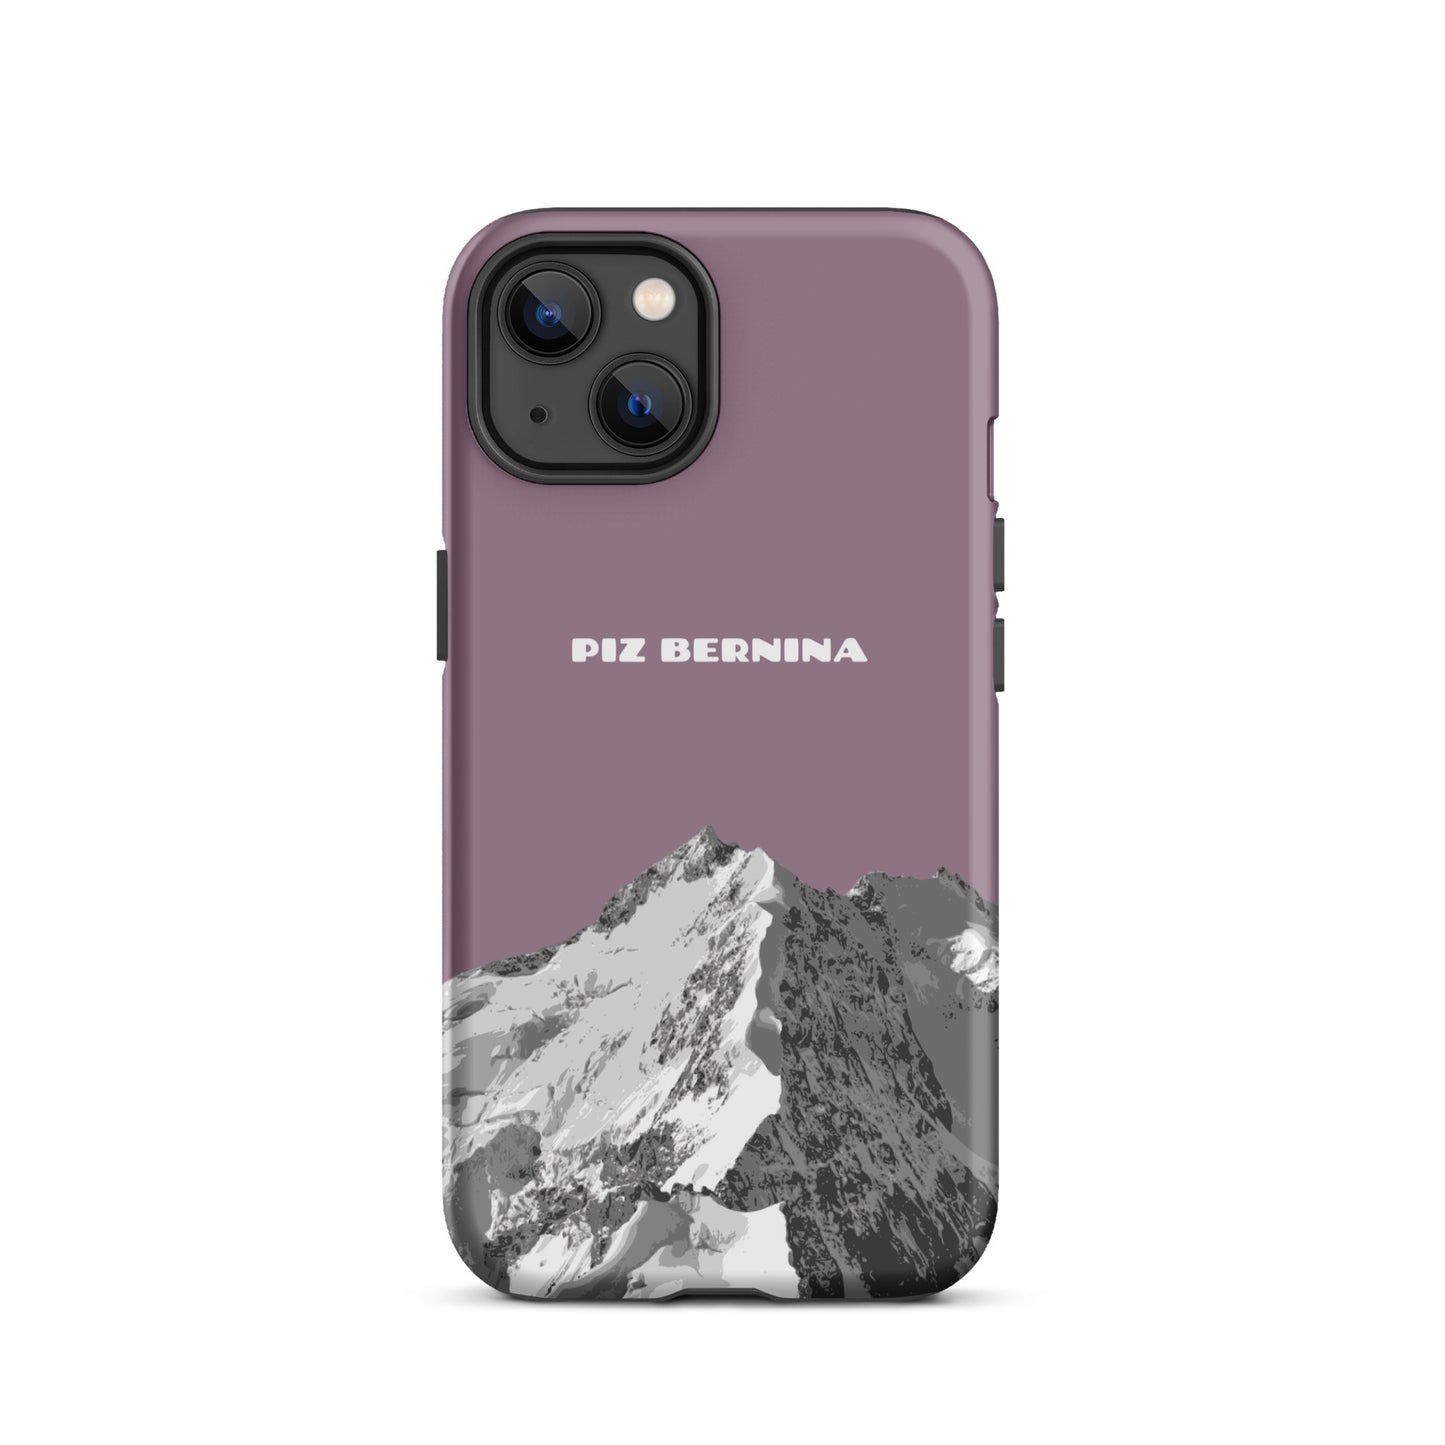 Hülle für das iPhone 13 von Apple in der Farbe Pastellviolett, dass den Piz Bernina in Graubünden zeigt.